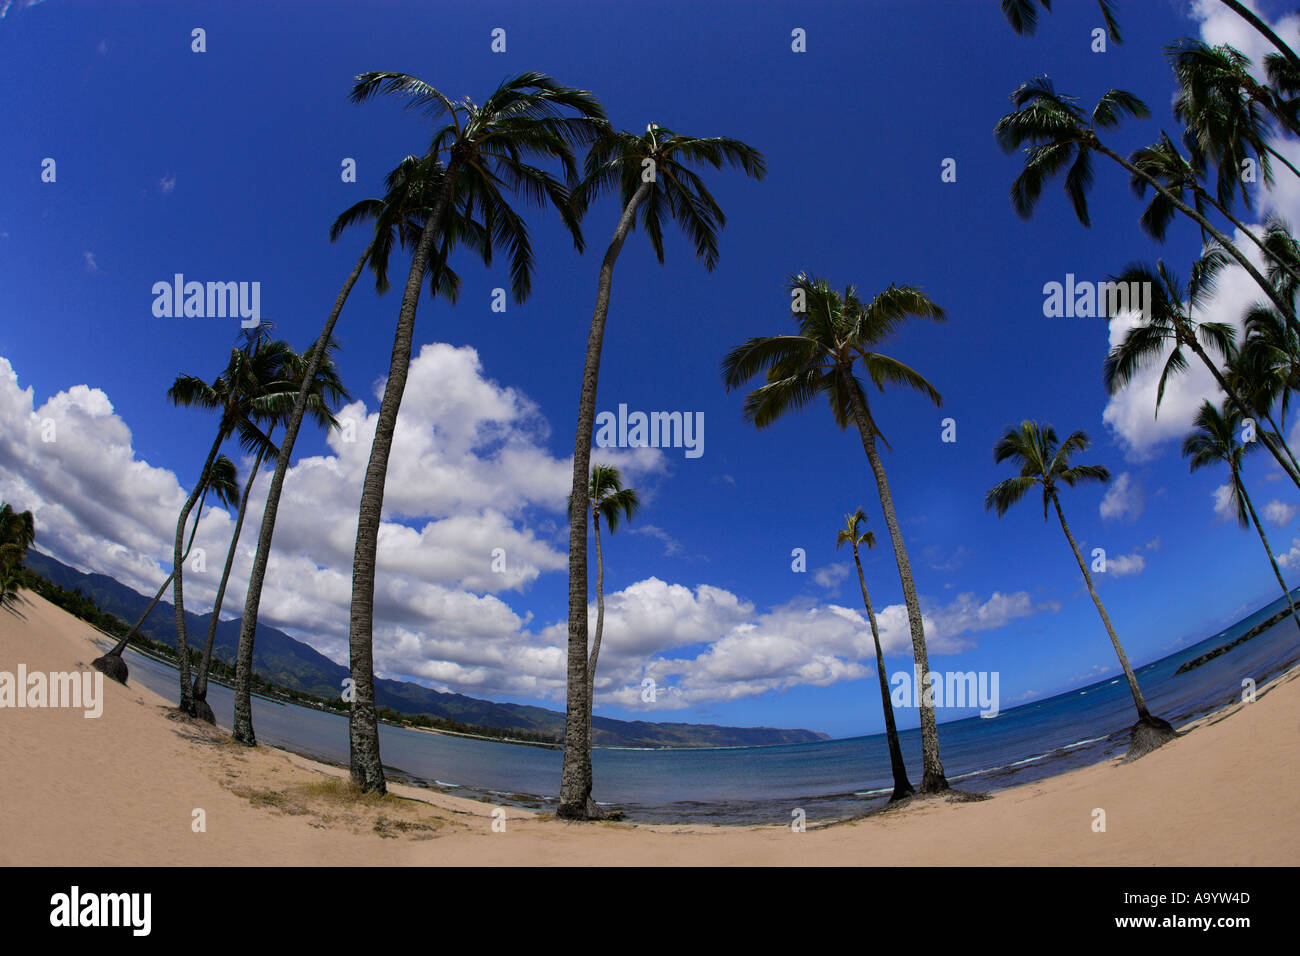 palmiers et plage près de Waimea Bay North Shore of Oaho Hawaï Océan Pacifique Banque D'Images